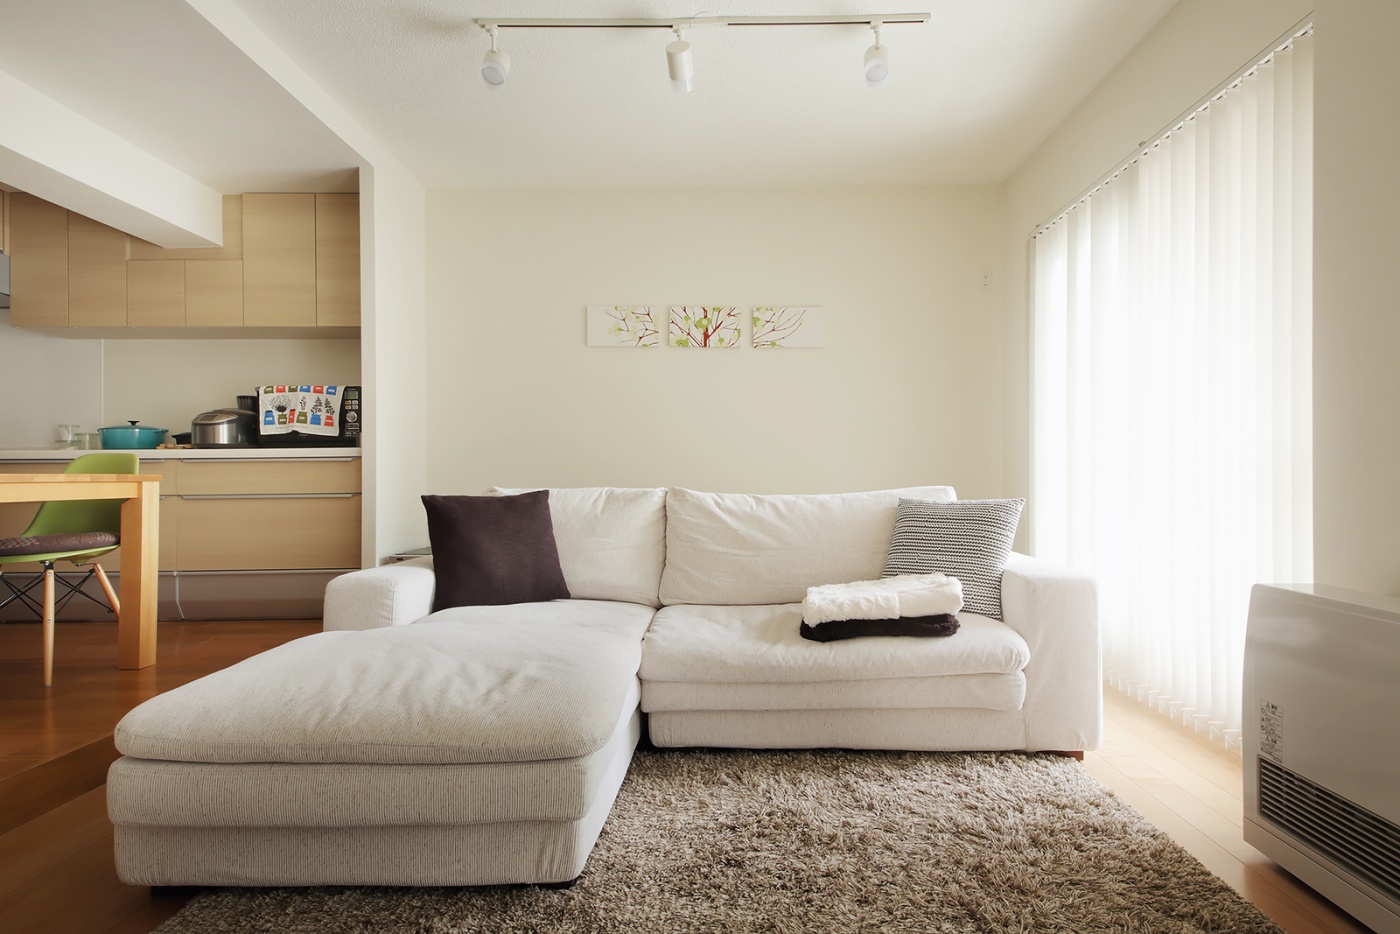 リビングにも大型の収納を設け、余計な家具などをおかずすっきりとした空間に。時々ソファの位置を変えて気分転換している。